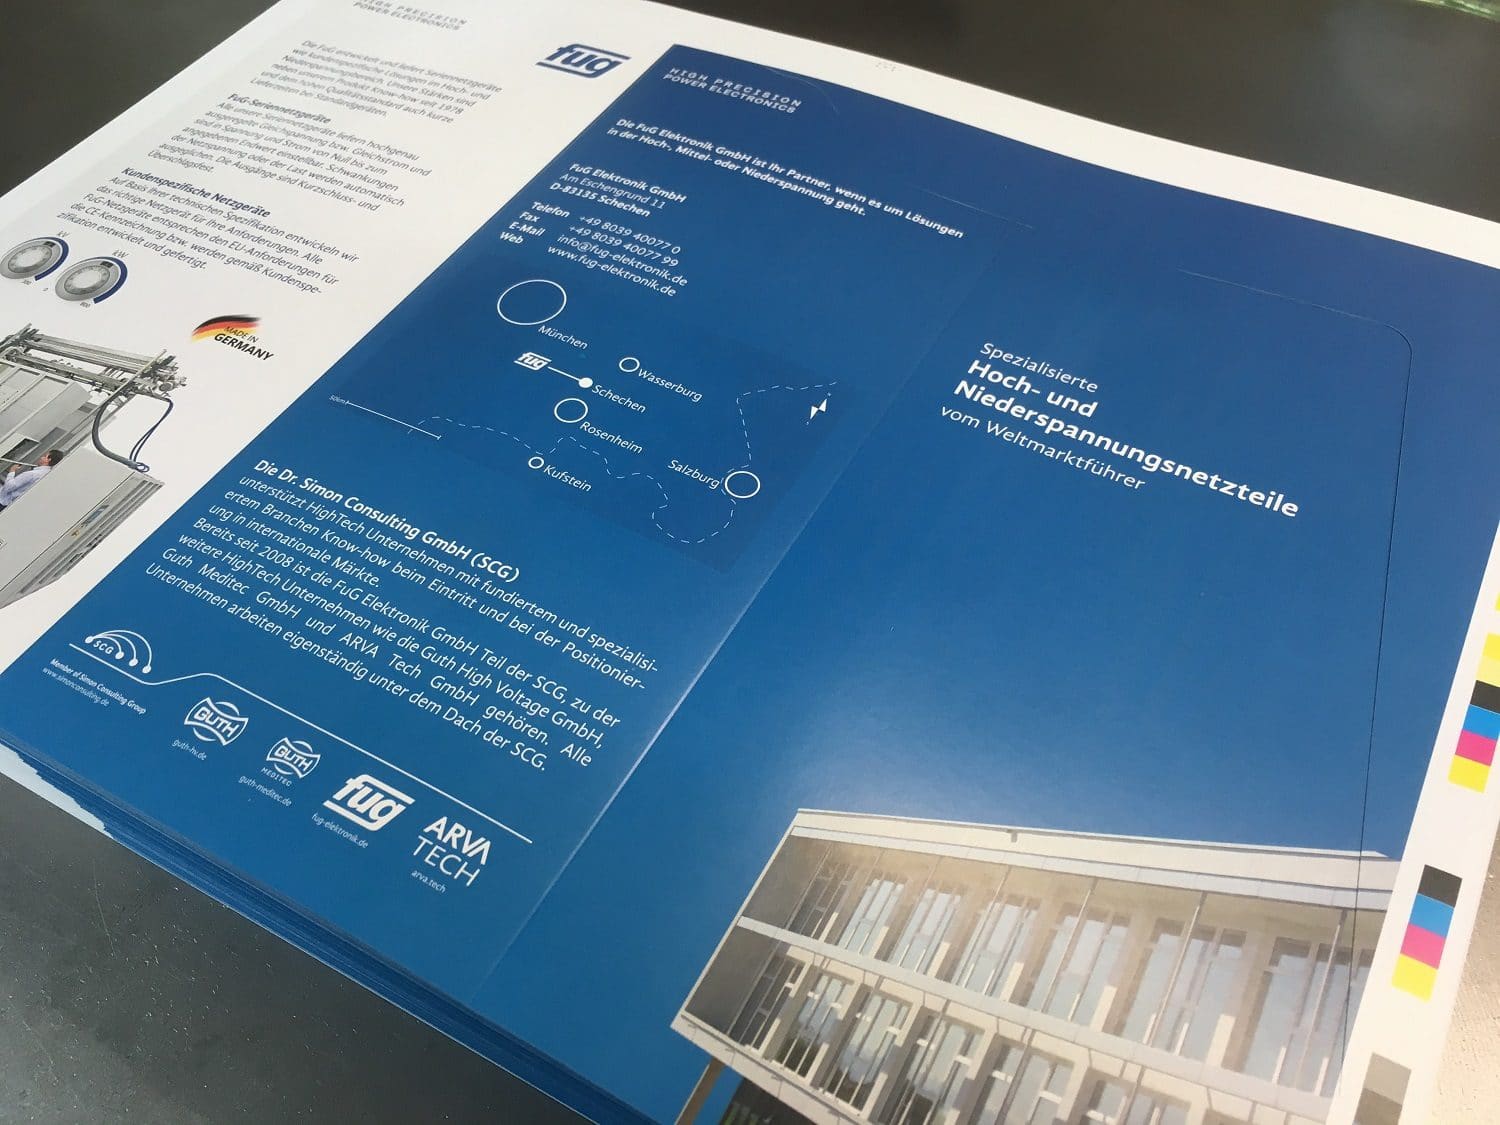 Flyer zum TecDay der FuG Elektronik GmbH gedruckt von Rapp-Druck GmbH